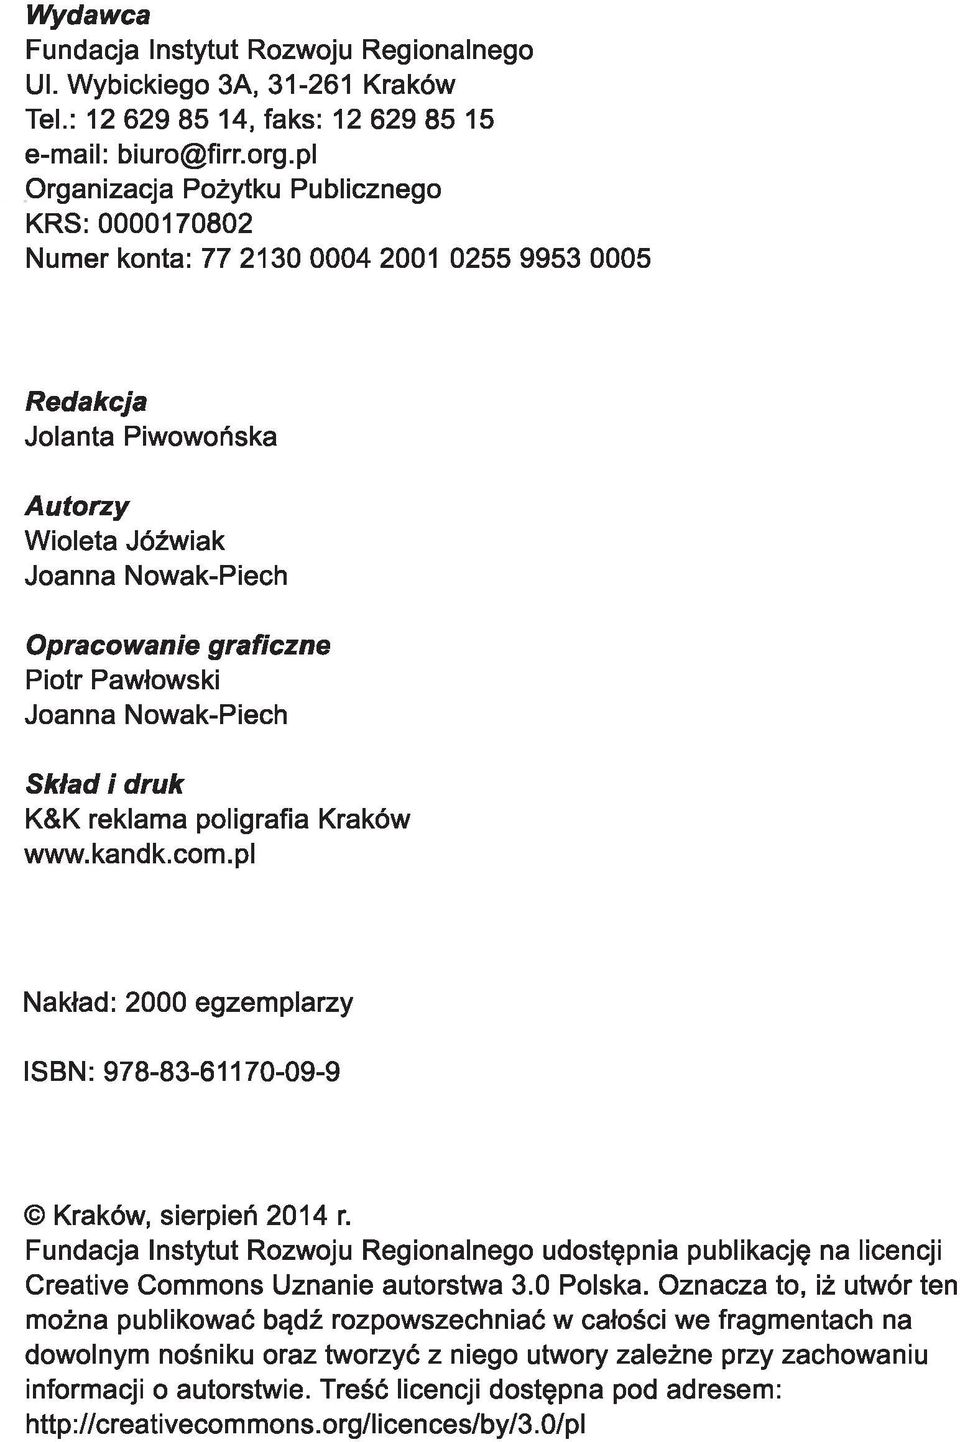 Pawłowski Joanna Nowak-Piech Skład i druk K&K reklama poligrafia Kraków www.kandk.com.pl Nakład: 2000 egzemplarzy ISBN: 978-83-61170-09-9 Kraków, sierpień 2014 r.